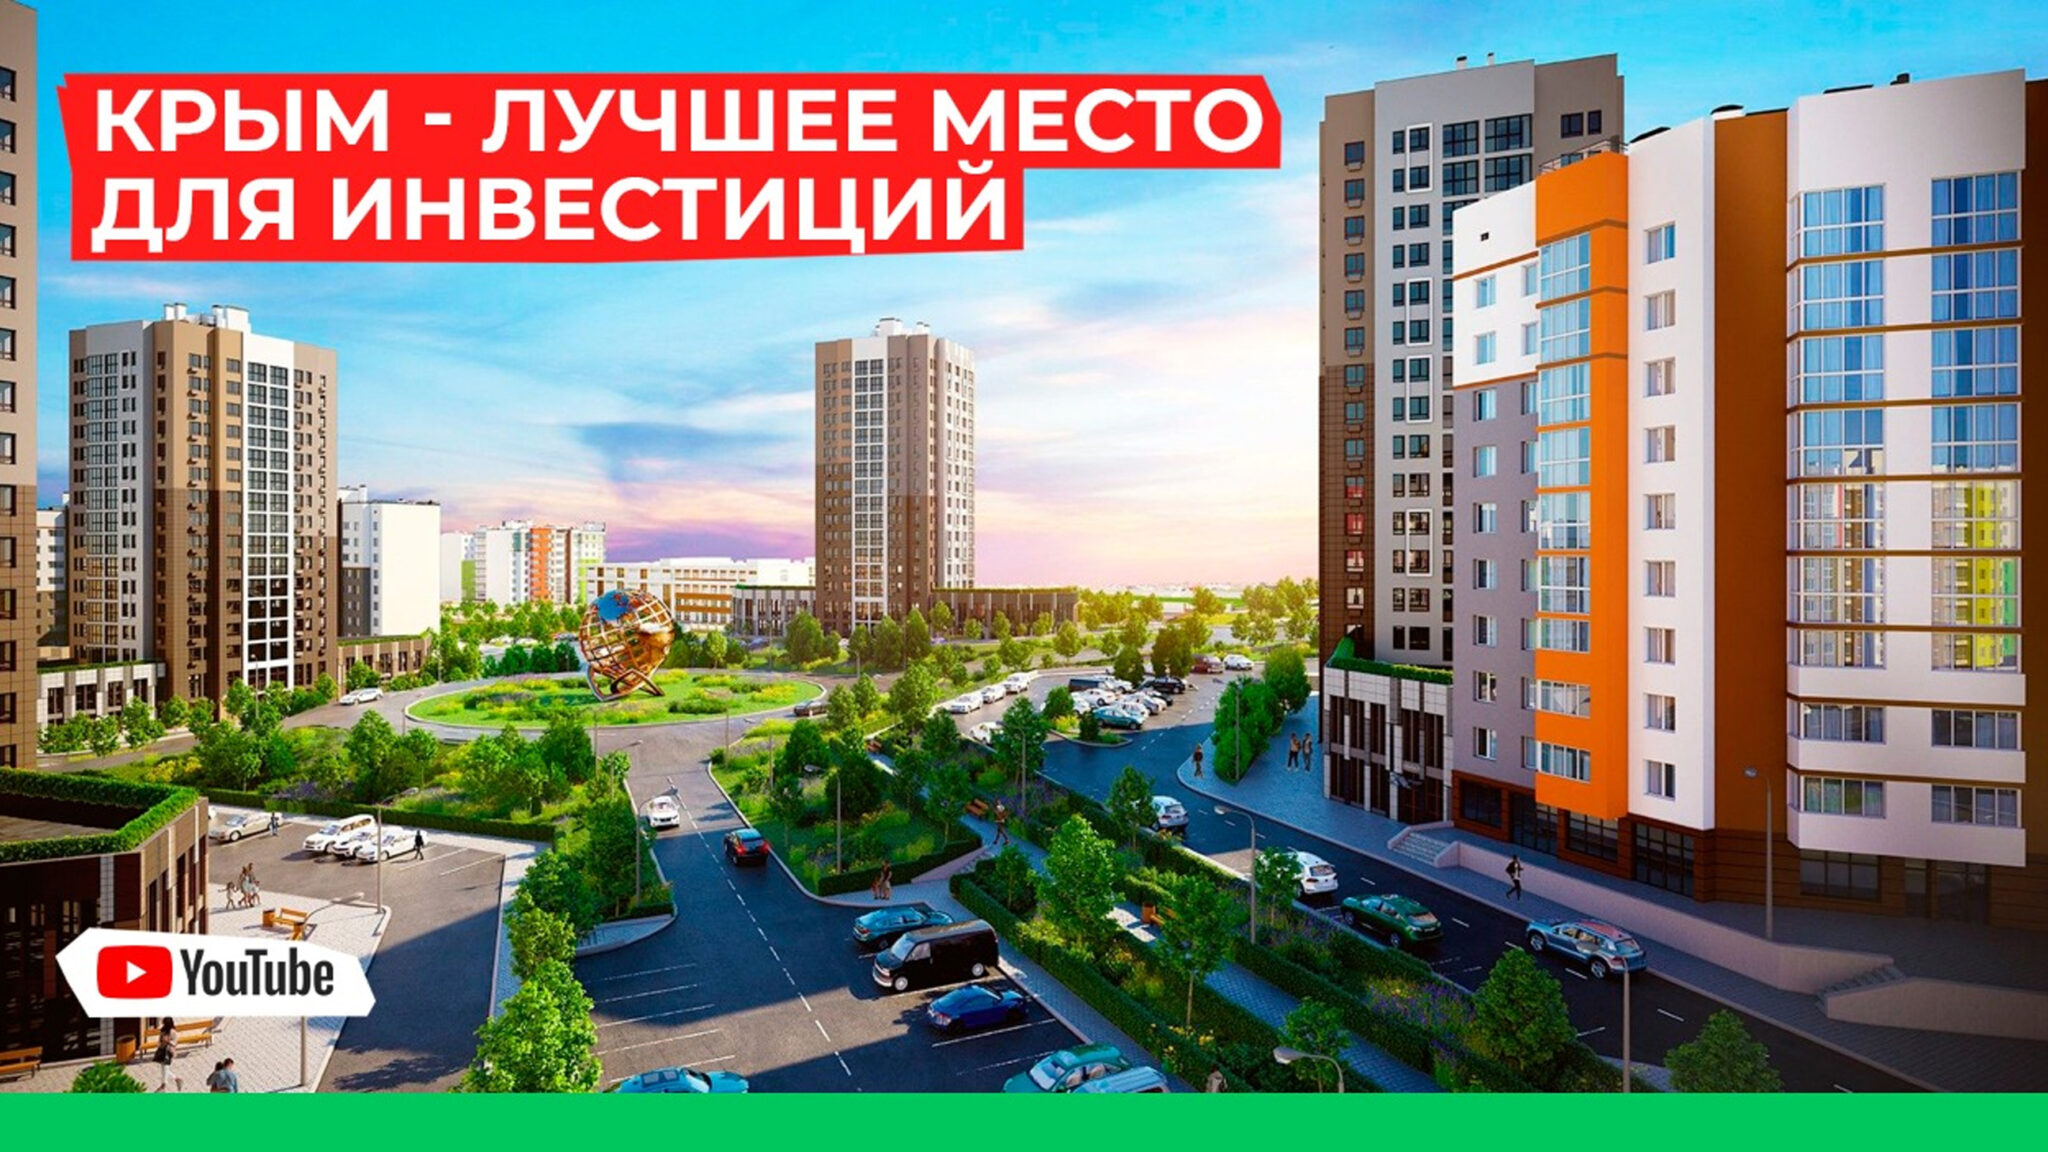 Корпорация развития Республики Крым: льготы, инвестиции, подбор площадок